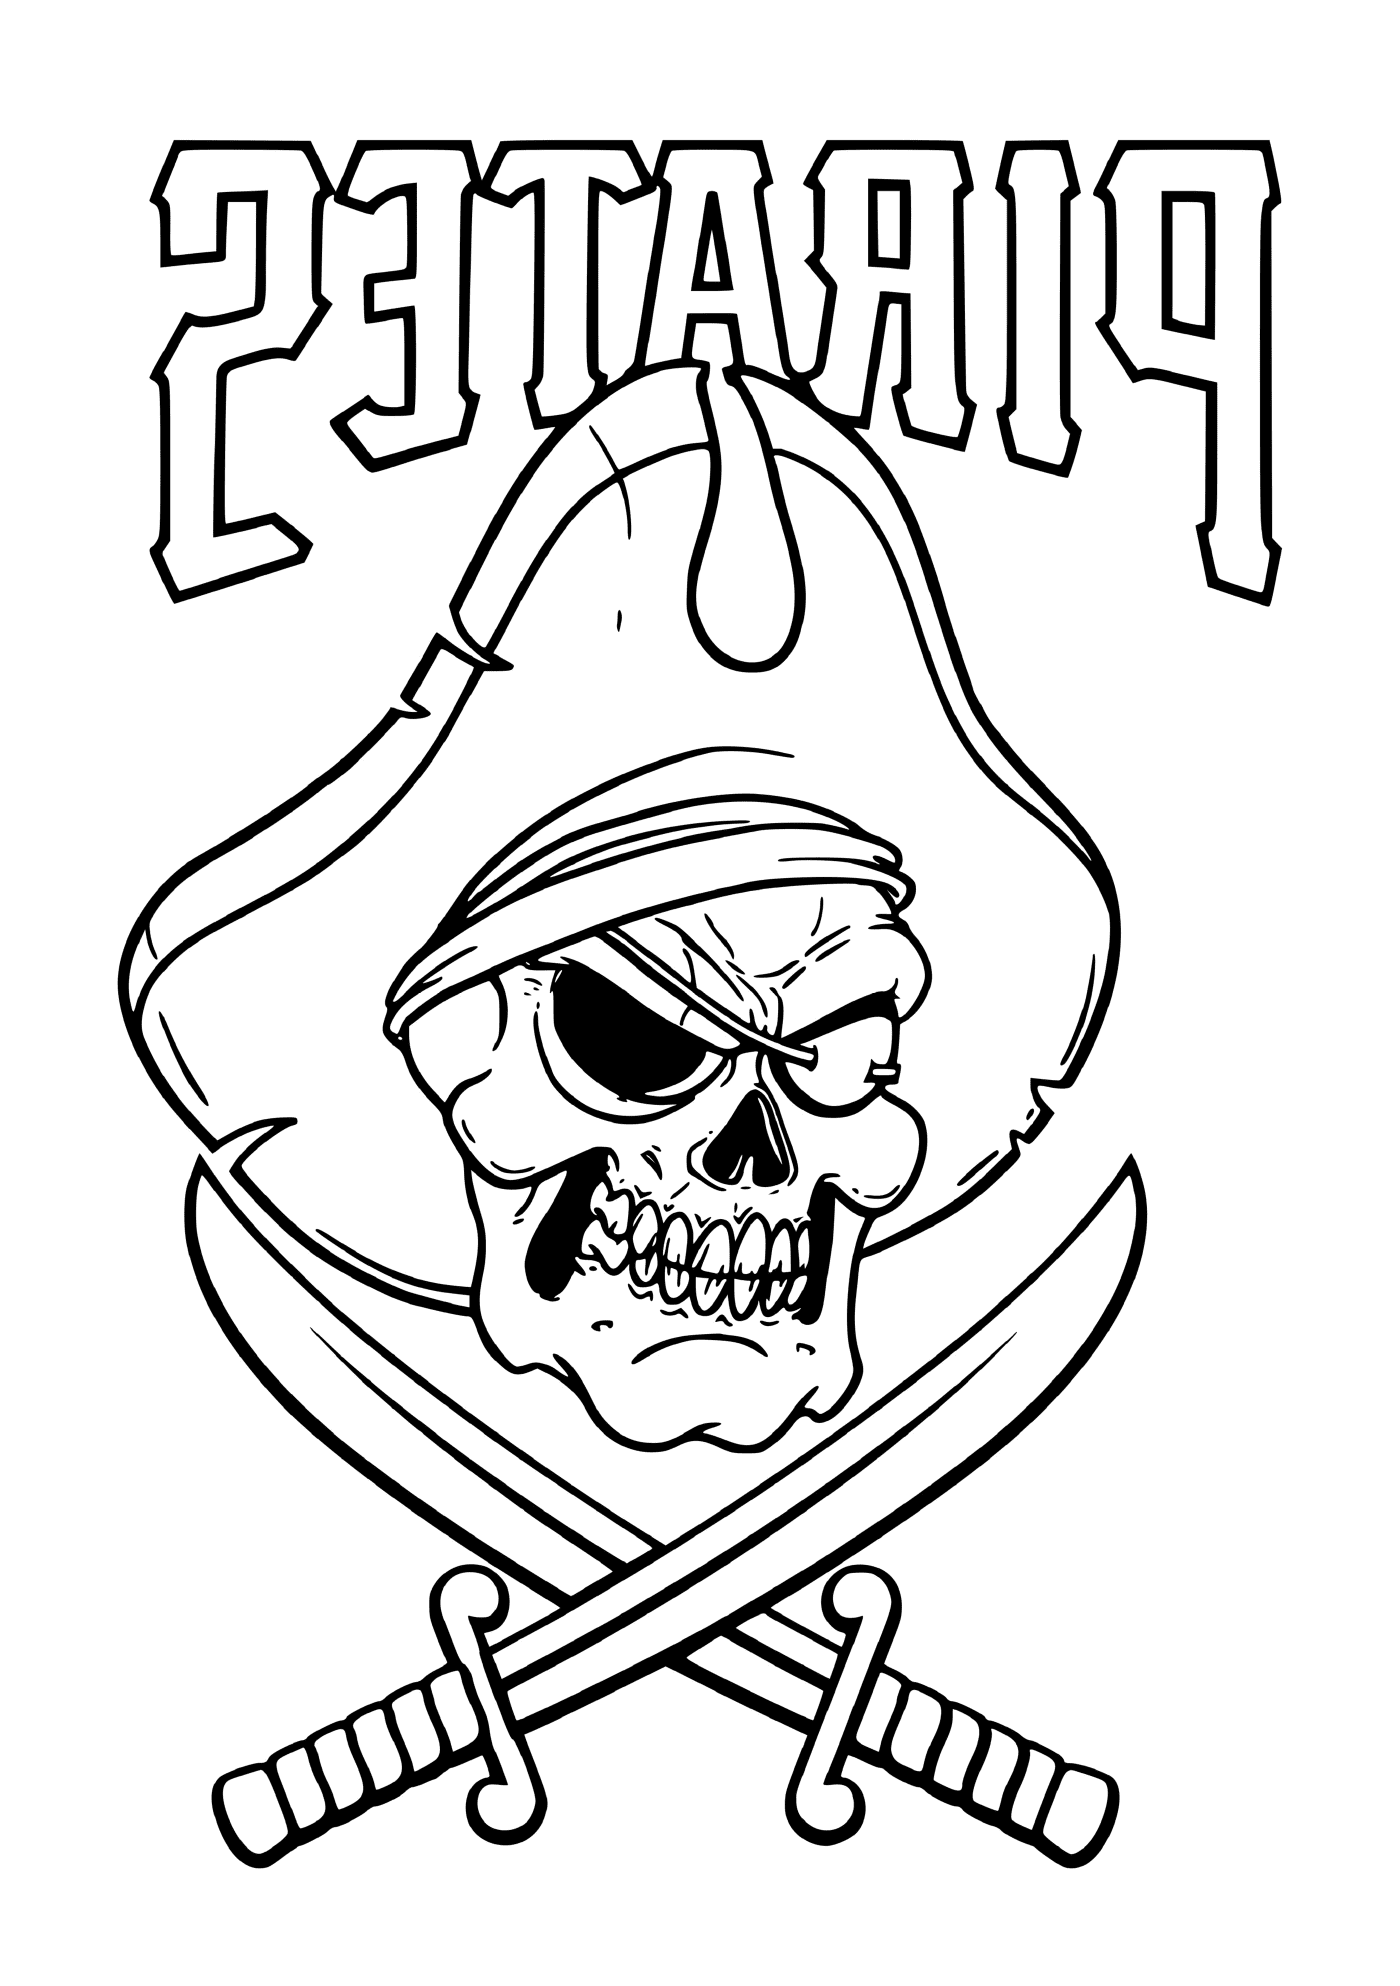  Пиратский скелет с шляпой и мечами 